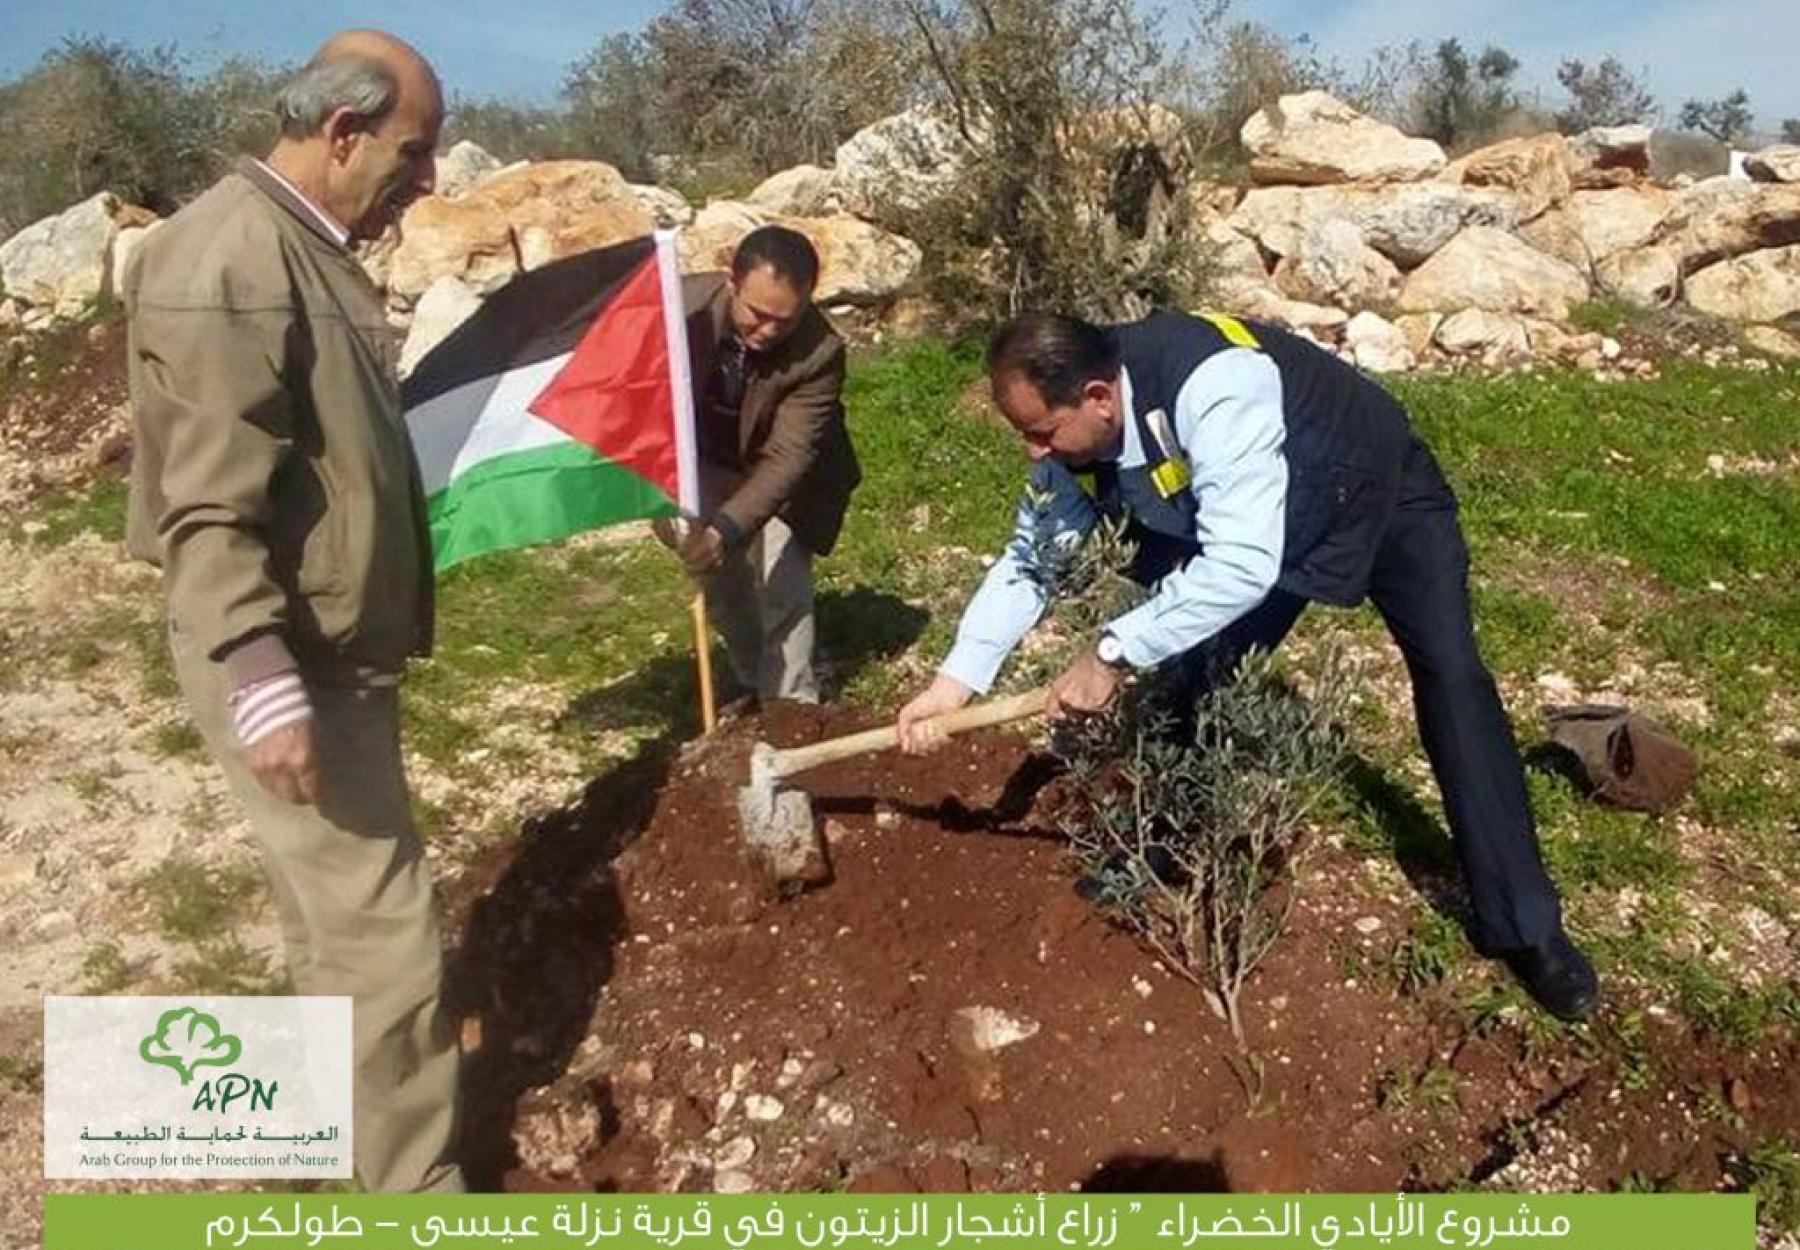 انجازات كبيرة ضمن مشروع "الأيادي الخضراء" في فلسطين